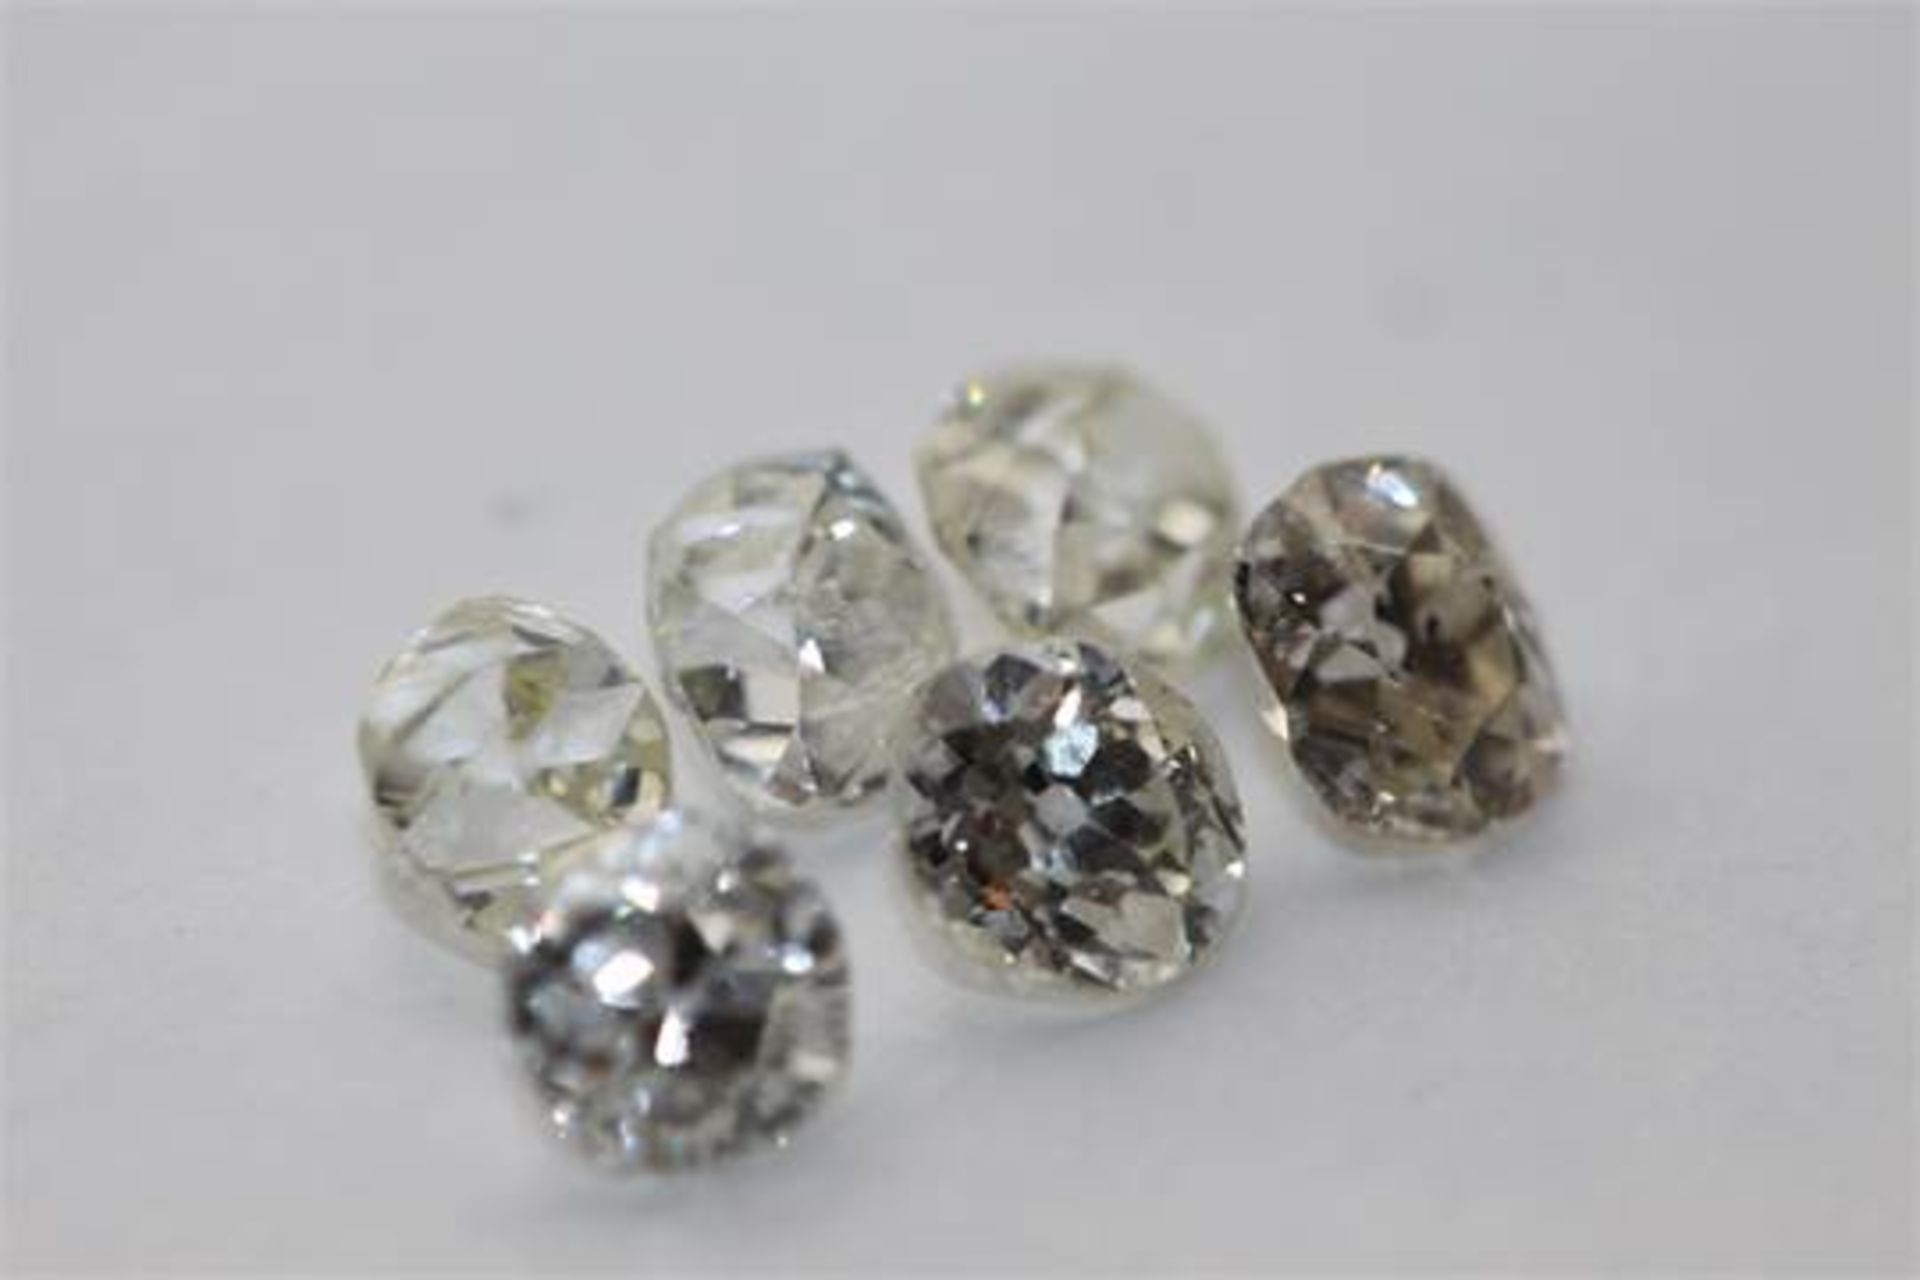 6 x Old cut Diamonds = 2.78ct,  Colour range D - J,  clarity VS - Image 2 of 3